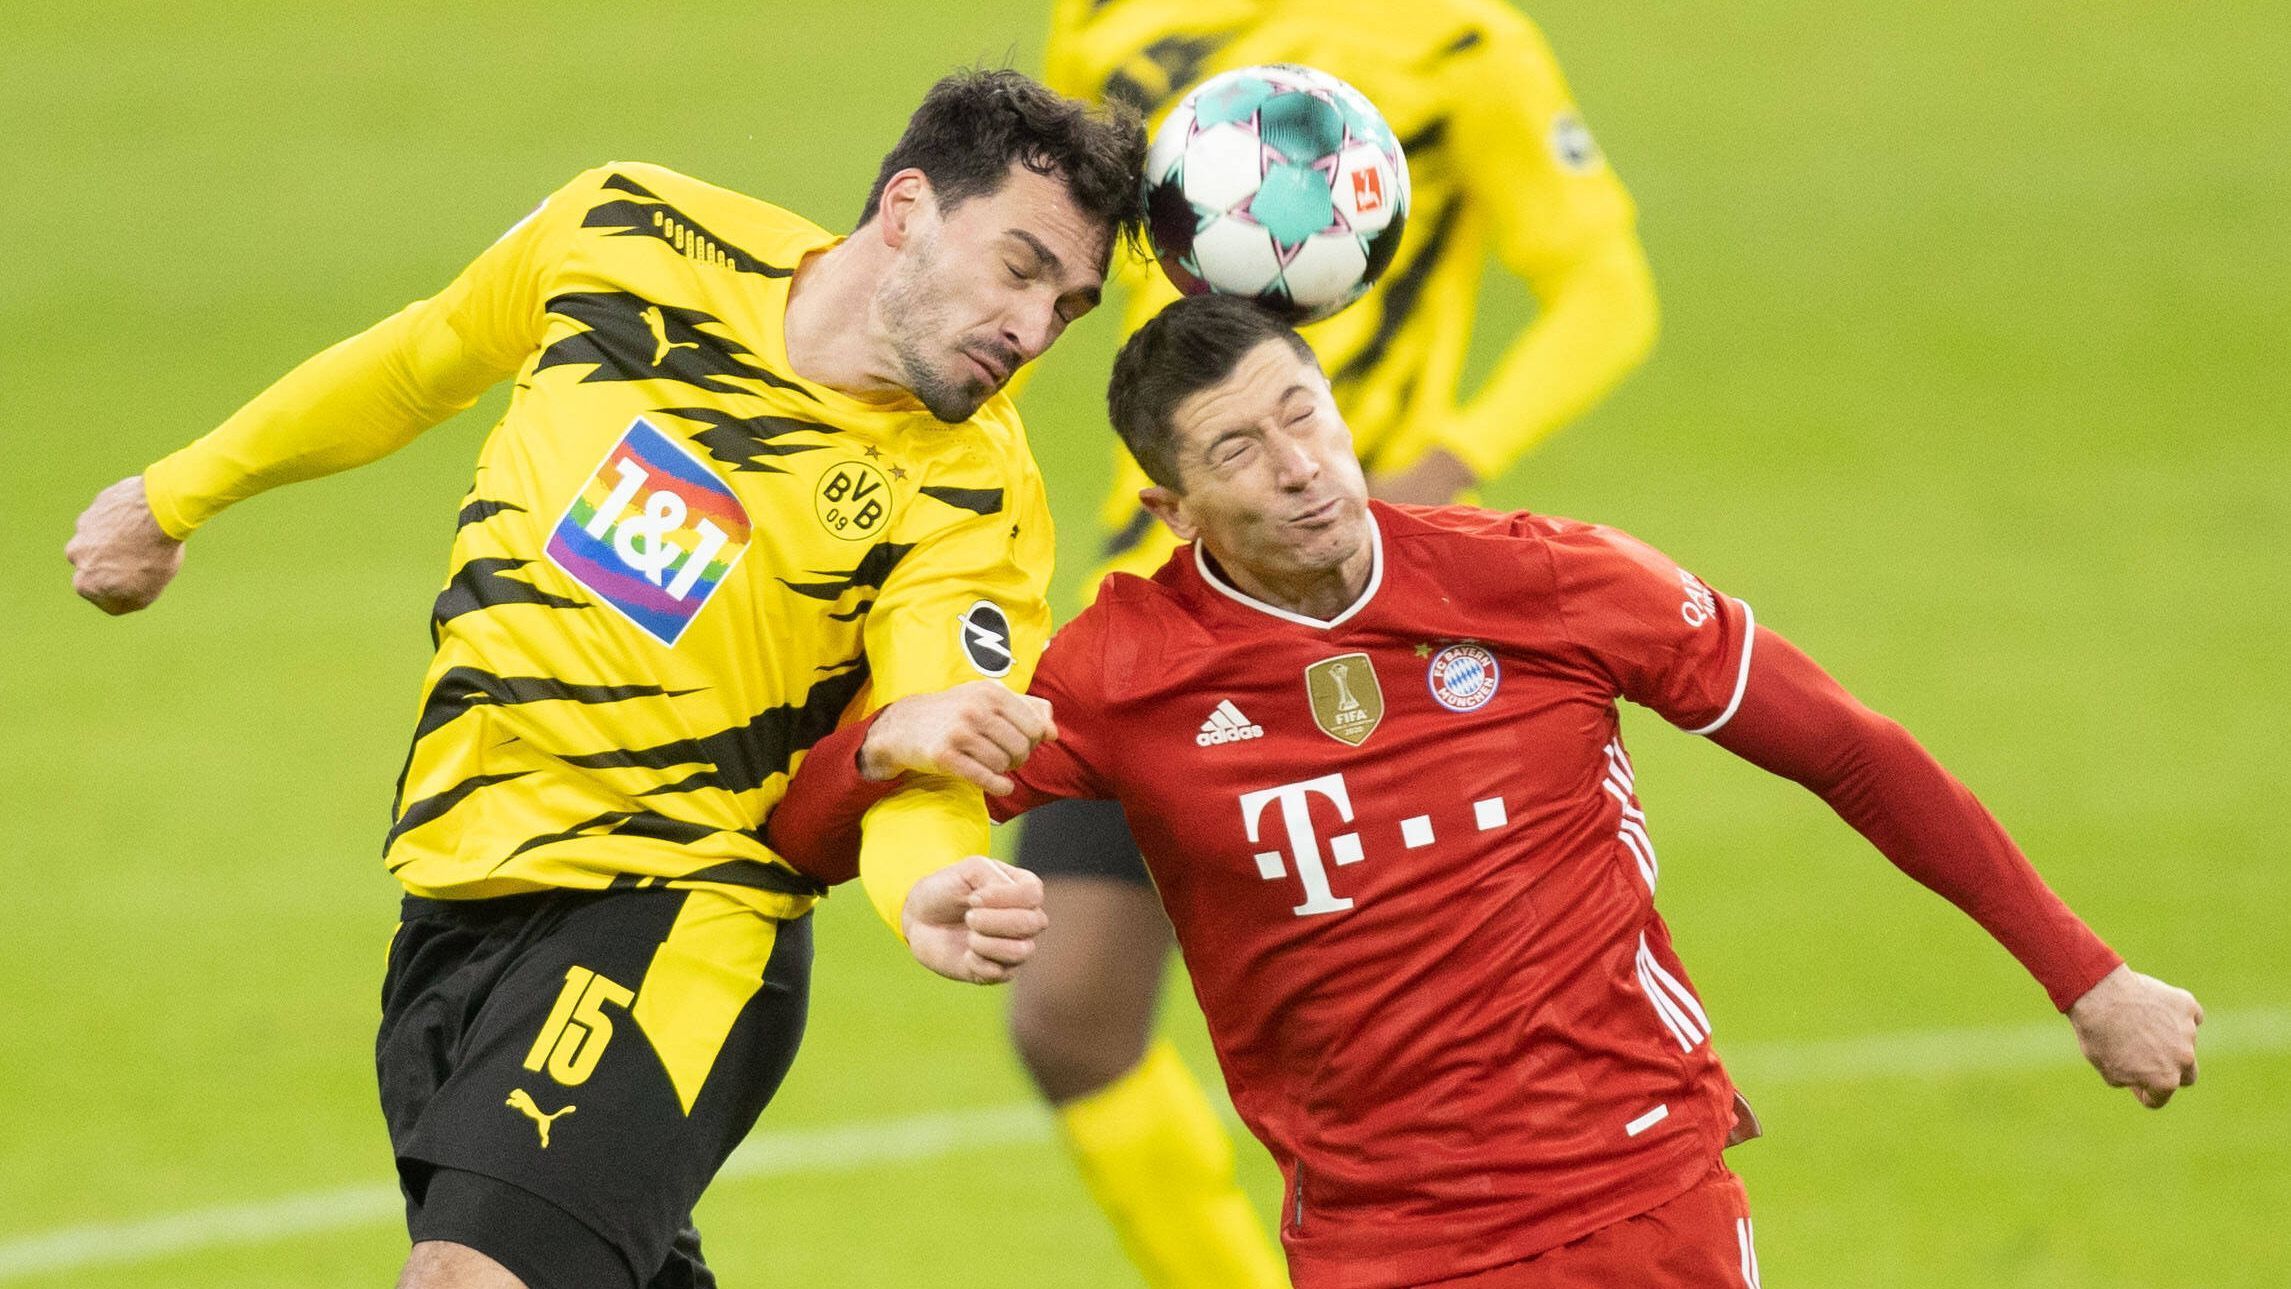 
                <strong>14. Spieltag: Borussia Dortmund - Bayern München</strong><br>
                Das erste Duell der beiden Topklubs  steigt am 14. Spieltag. Kann der BVB um Stürmerstar Erling Haaland den Bayern dieses Mal die Meisterschaft streitig machen? Das Duell wird eine erste Auskunft geben.
              